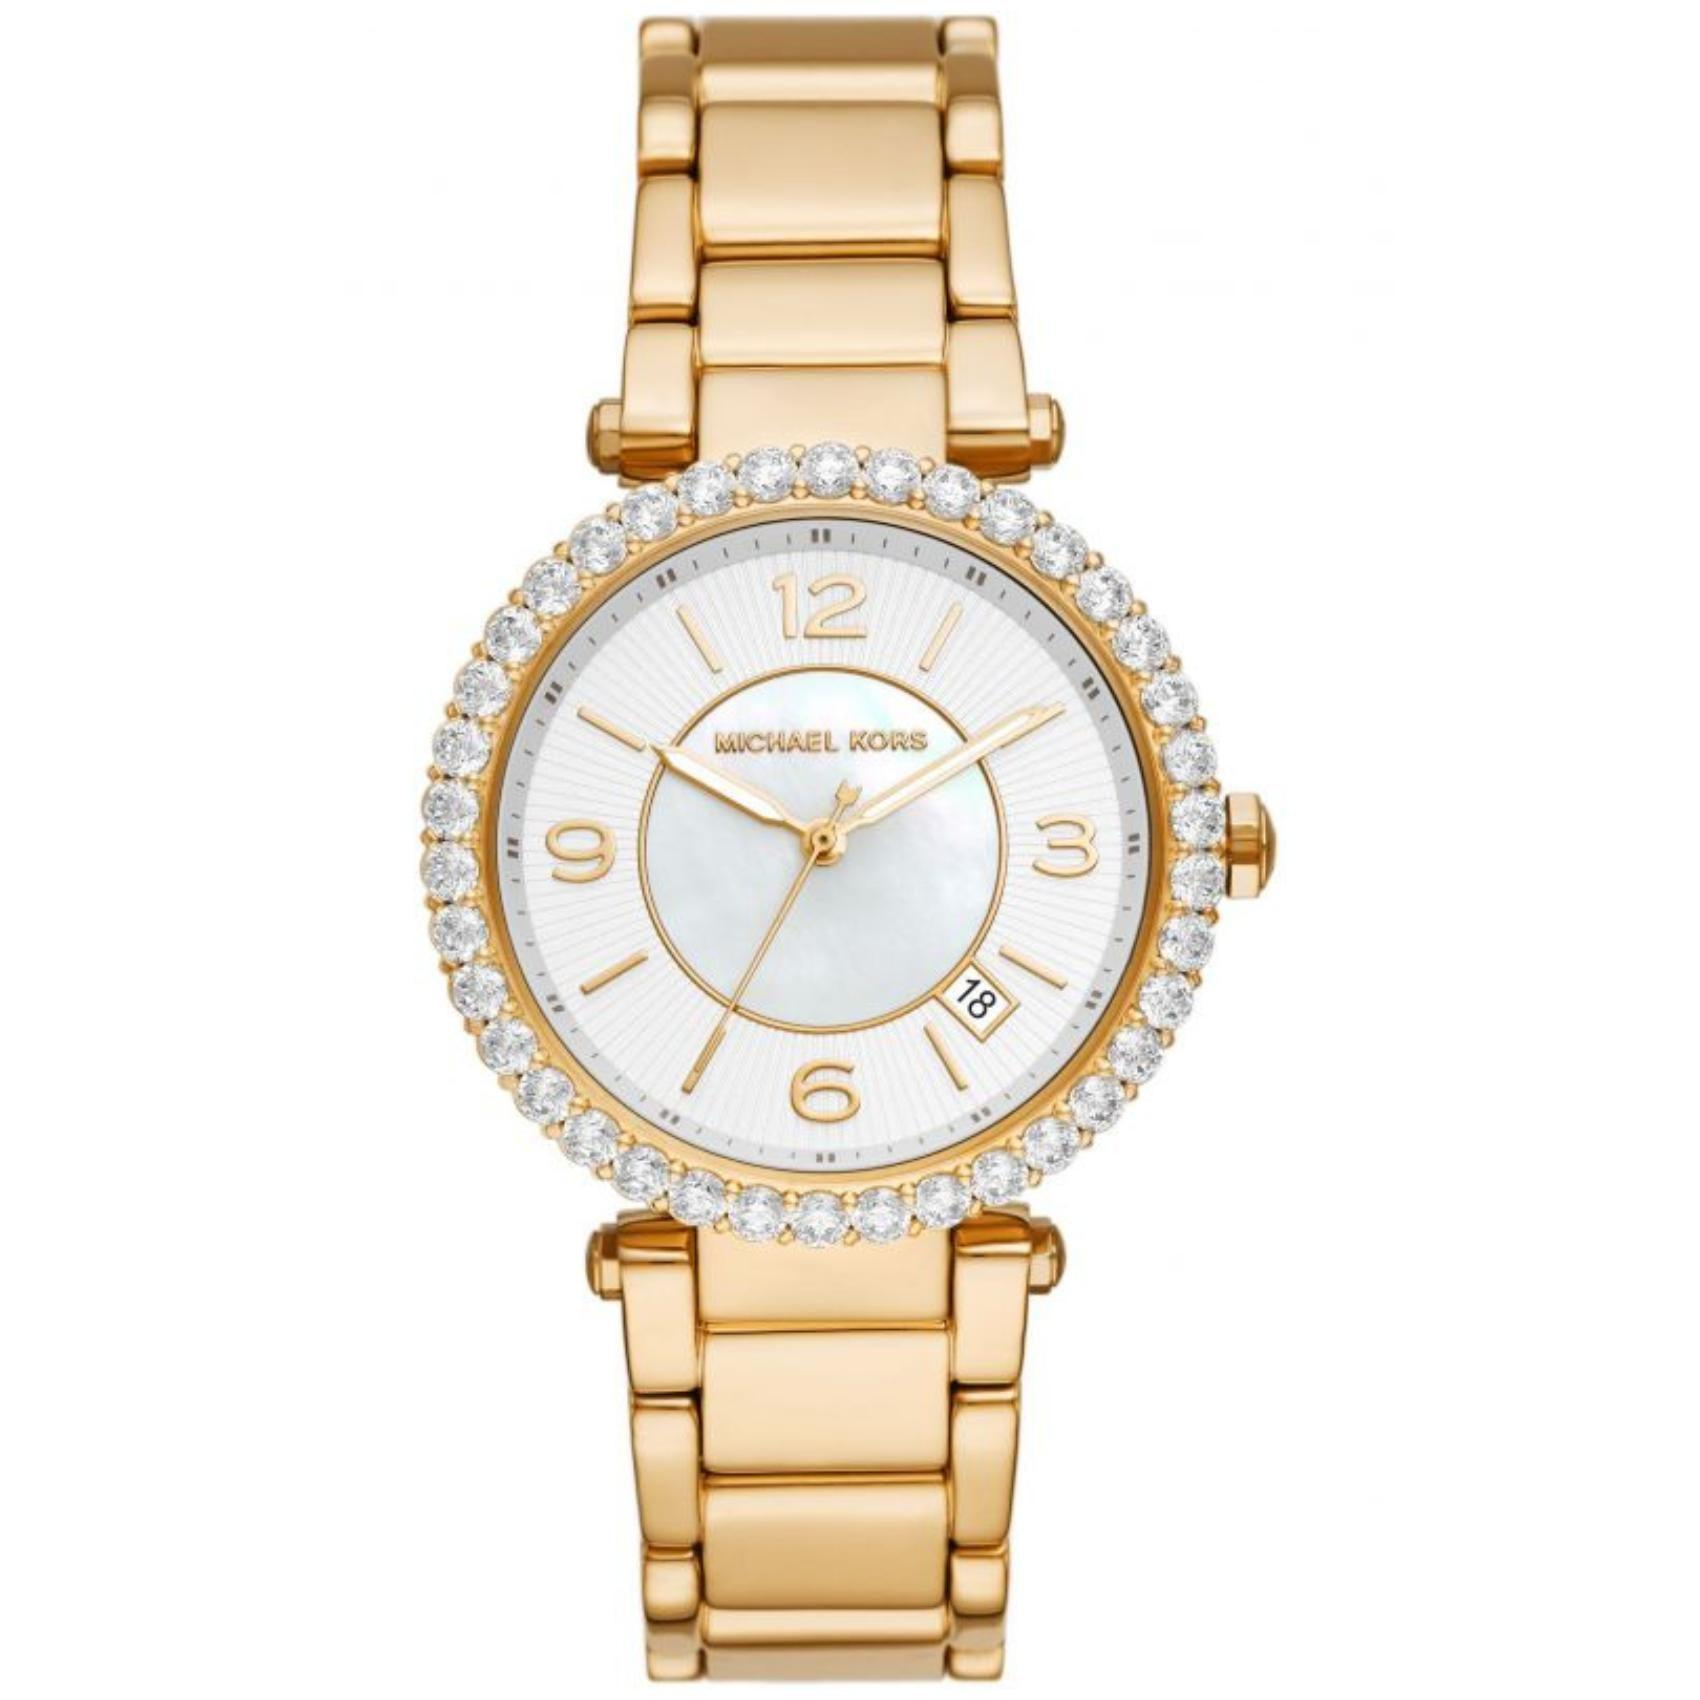 Γυναικείο ρολόι Michael Kors Parker MK4693 με ατσάλινο μπρασελέ σε χρυσό χρώμα, στρογγυλό άσπρο καντράν και στεφάνι 38mm με ζιργκόν.